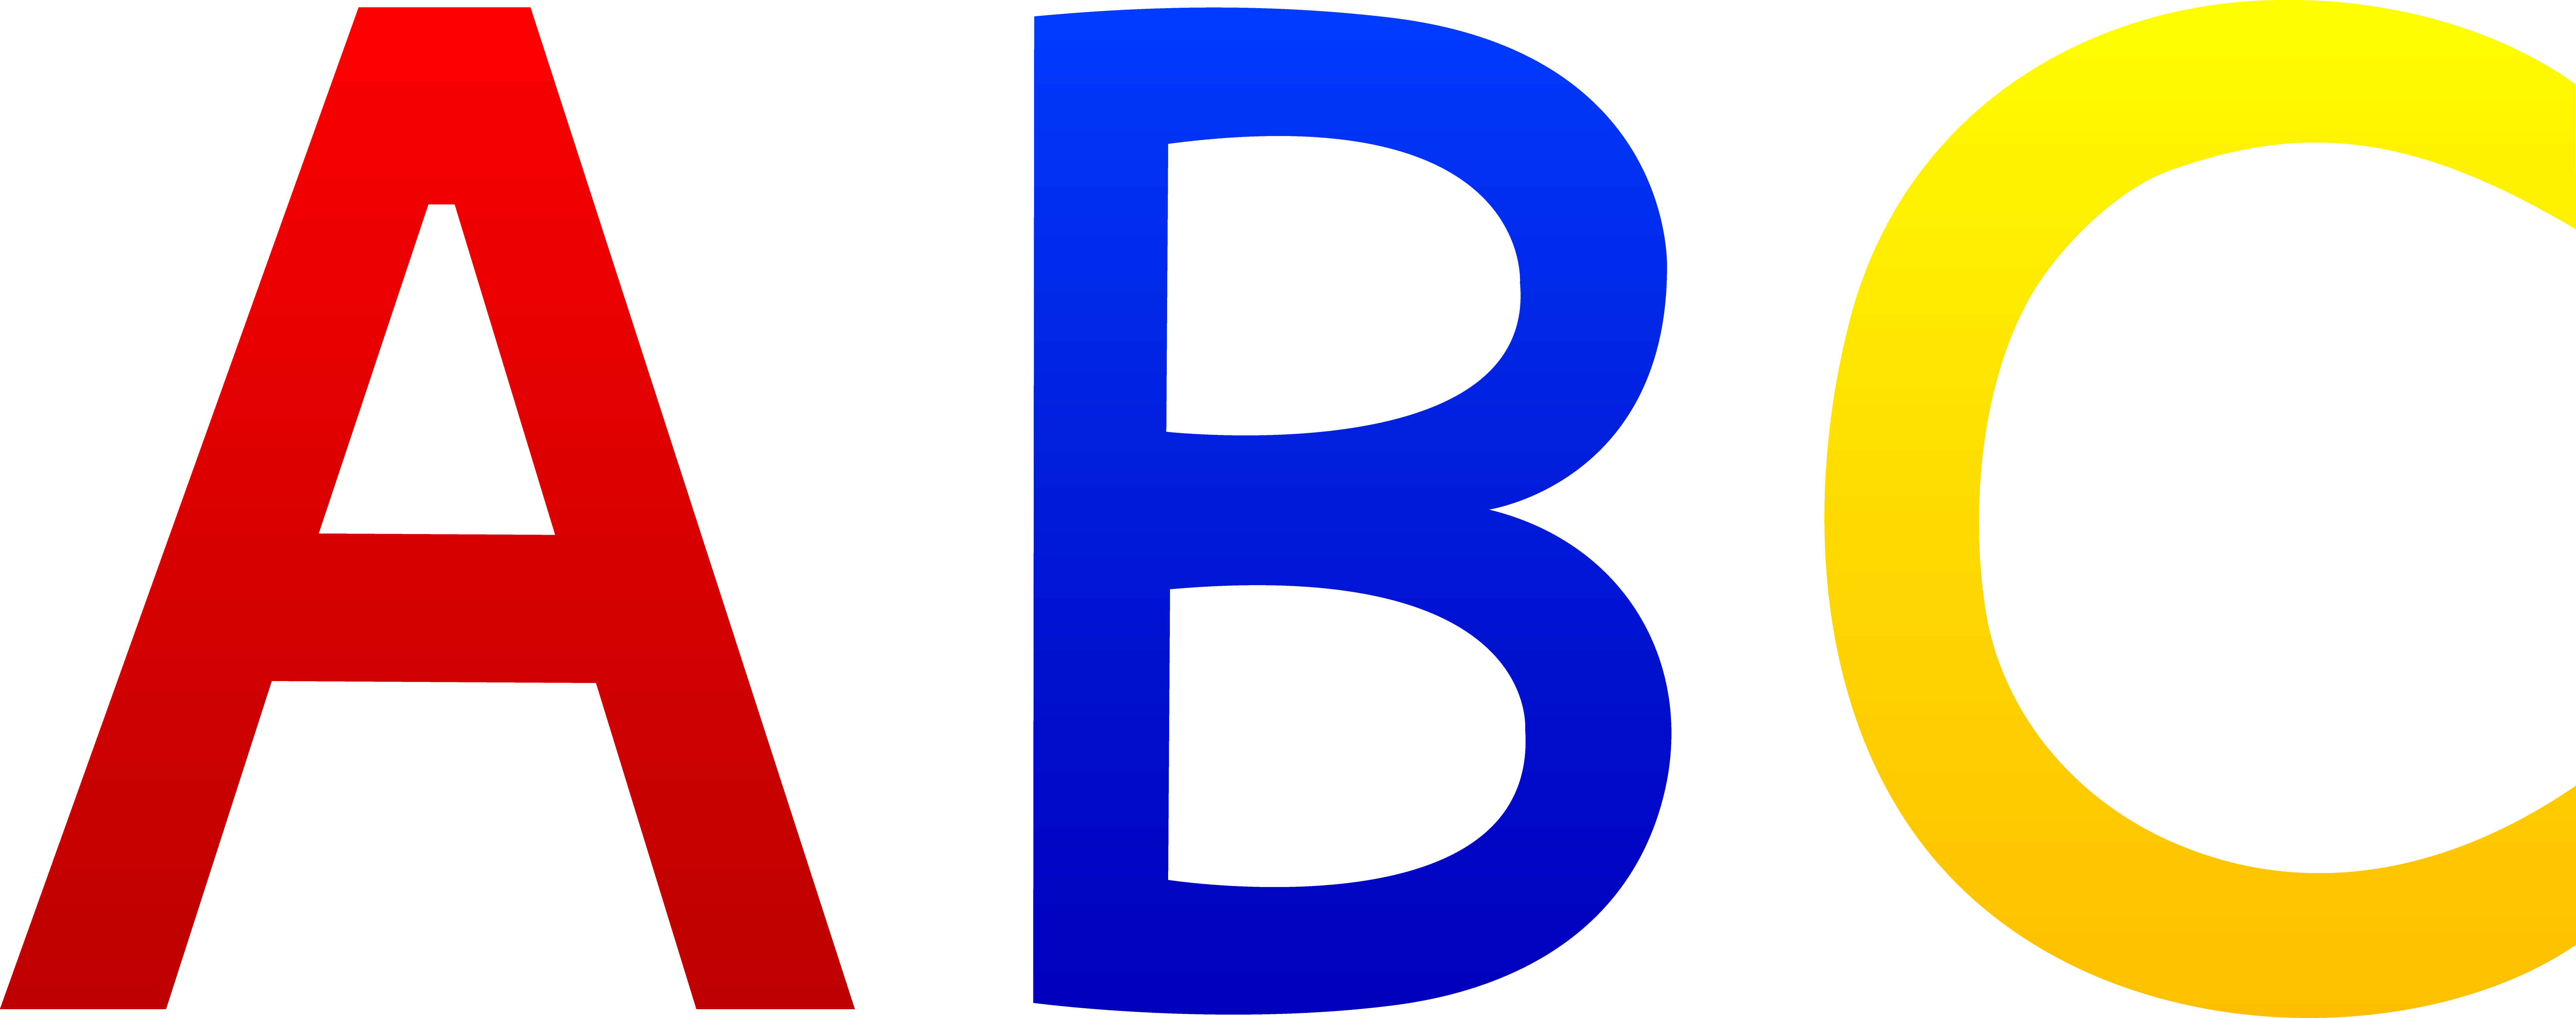 Clip art alphabet letters